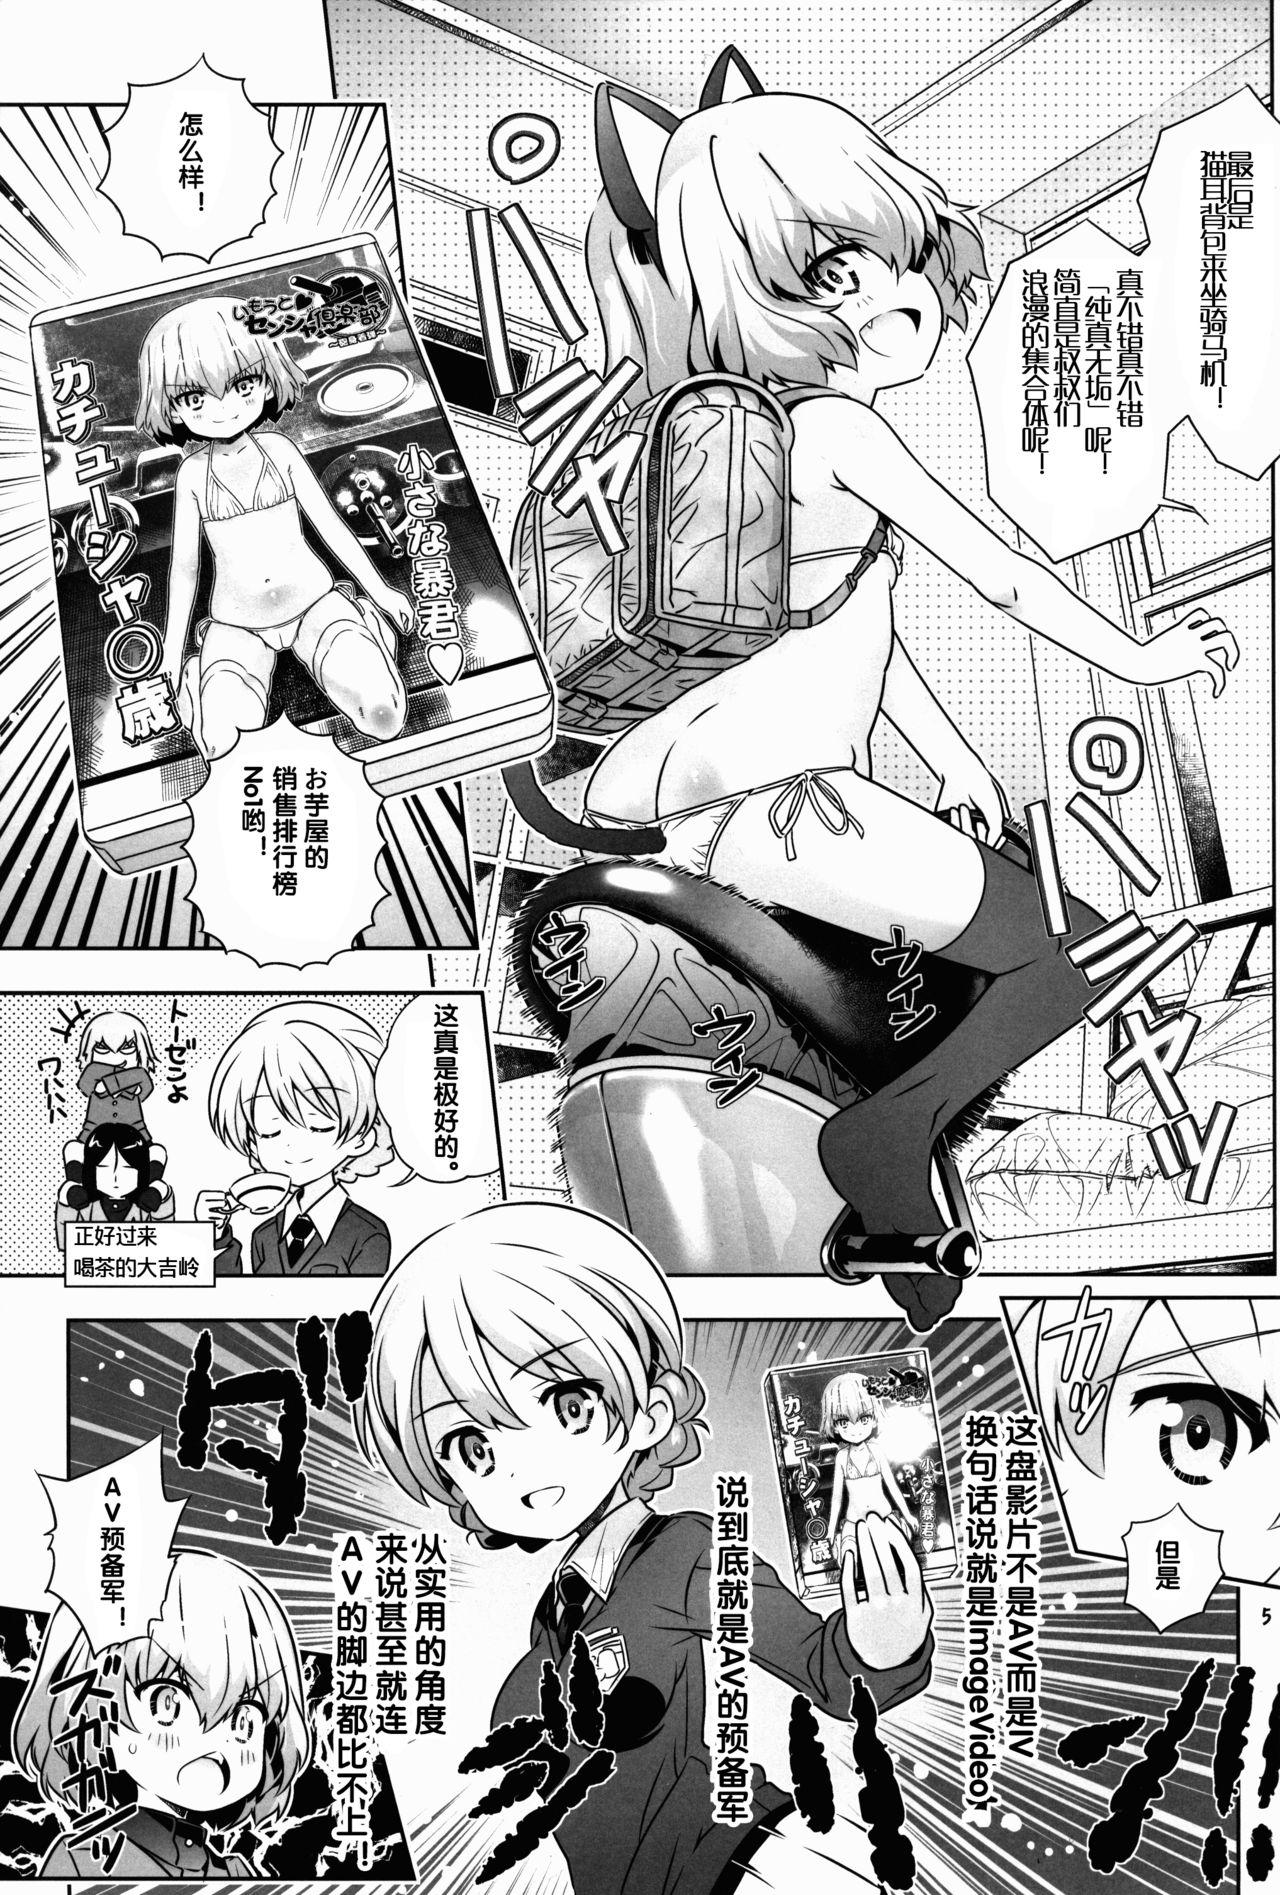 Ikillitts "AV Shutsuen, Ganbarimasu!?" Tsugi wa Enkou desu!! - Girls und panzer Yanks Featured - Page 5